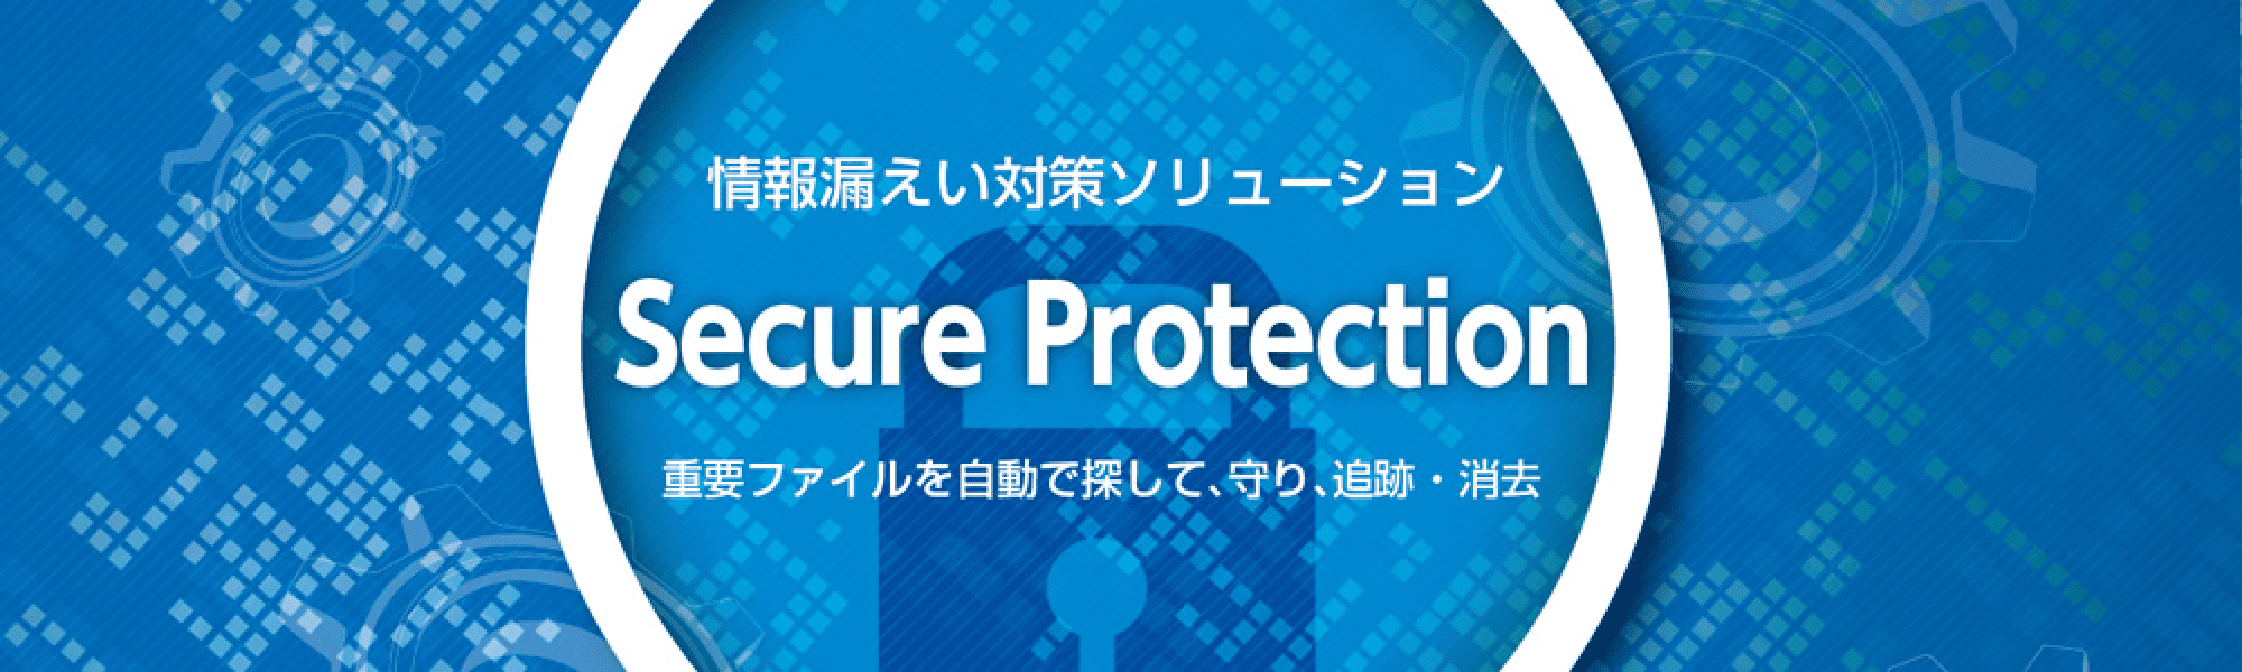 情報漏洩対策ソリューション Secure Protection